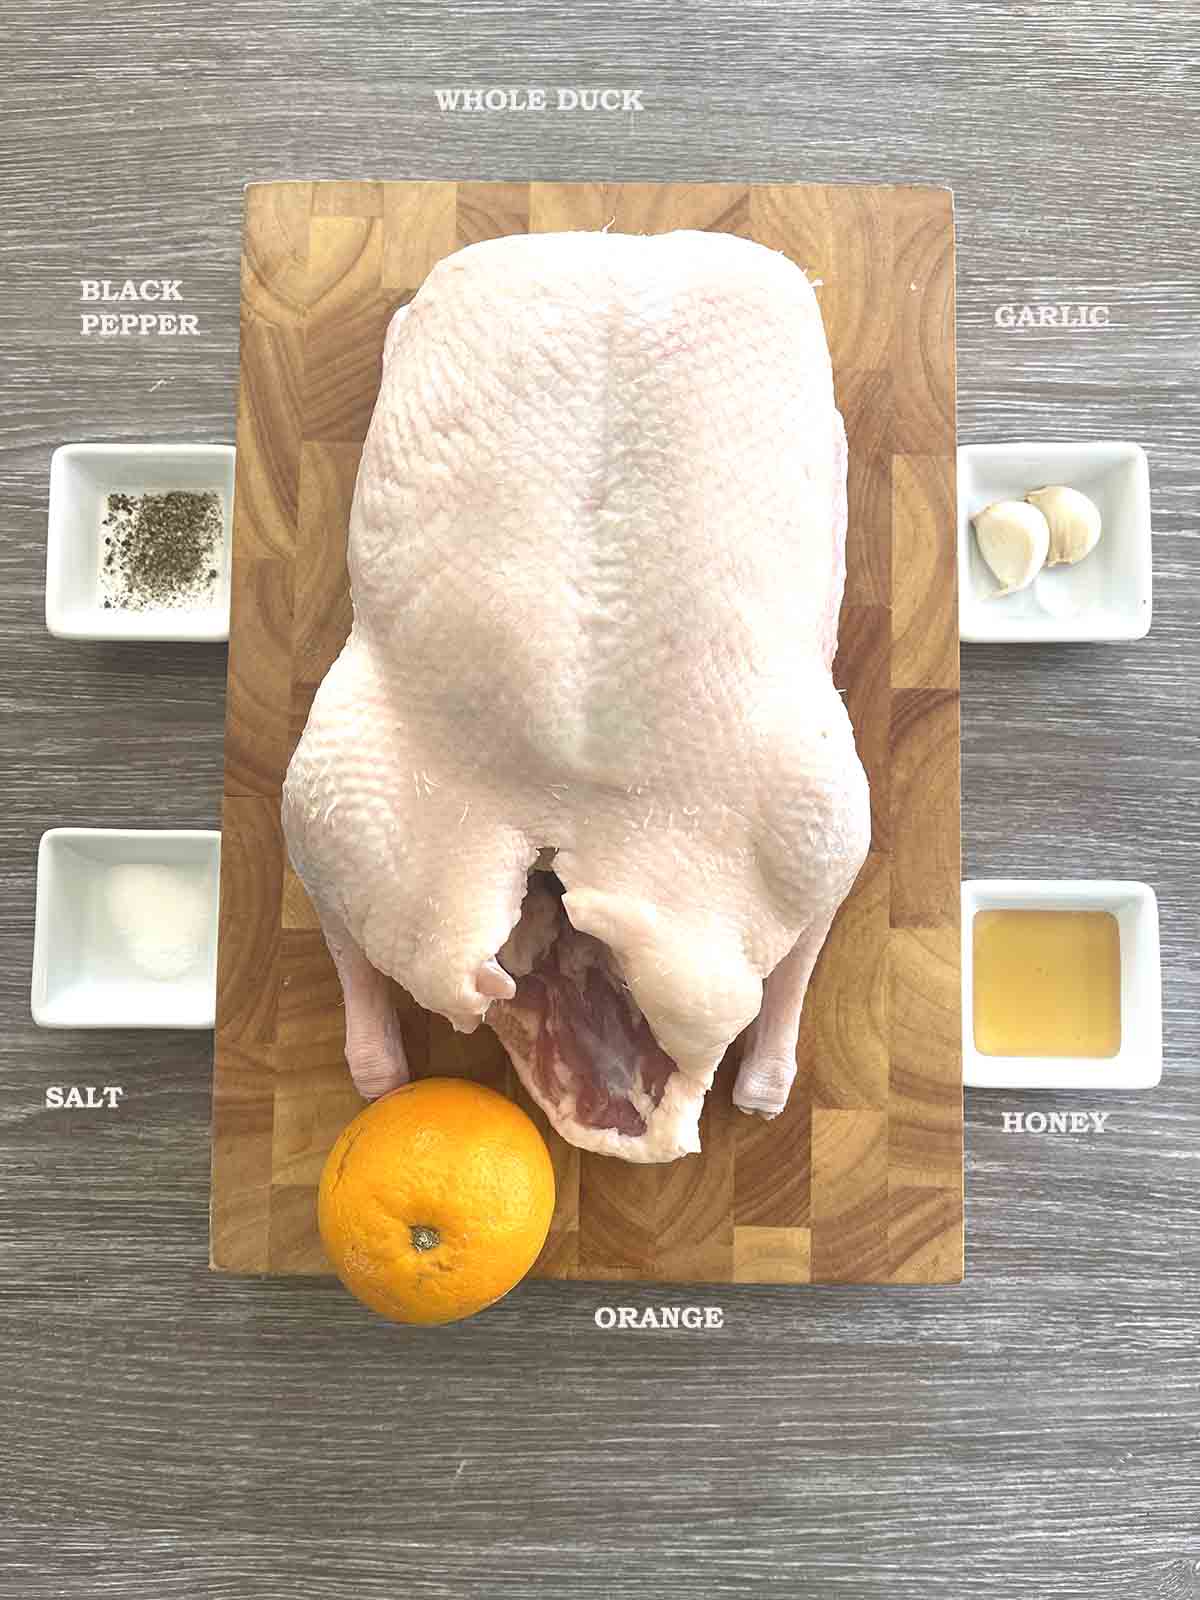 ingredients including duck, orange, honey, garlic and seasoning.